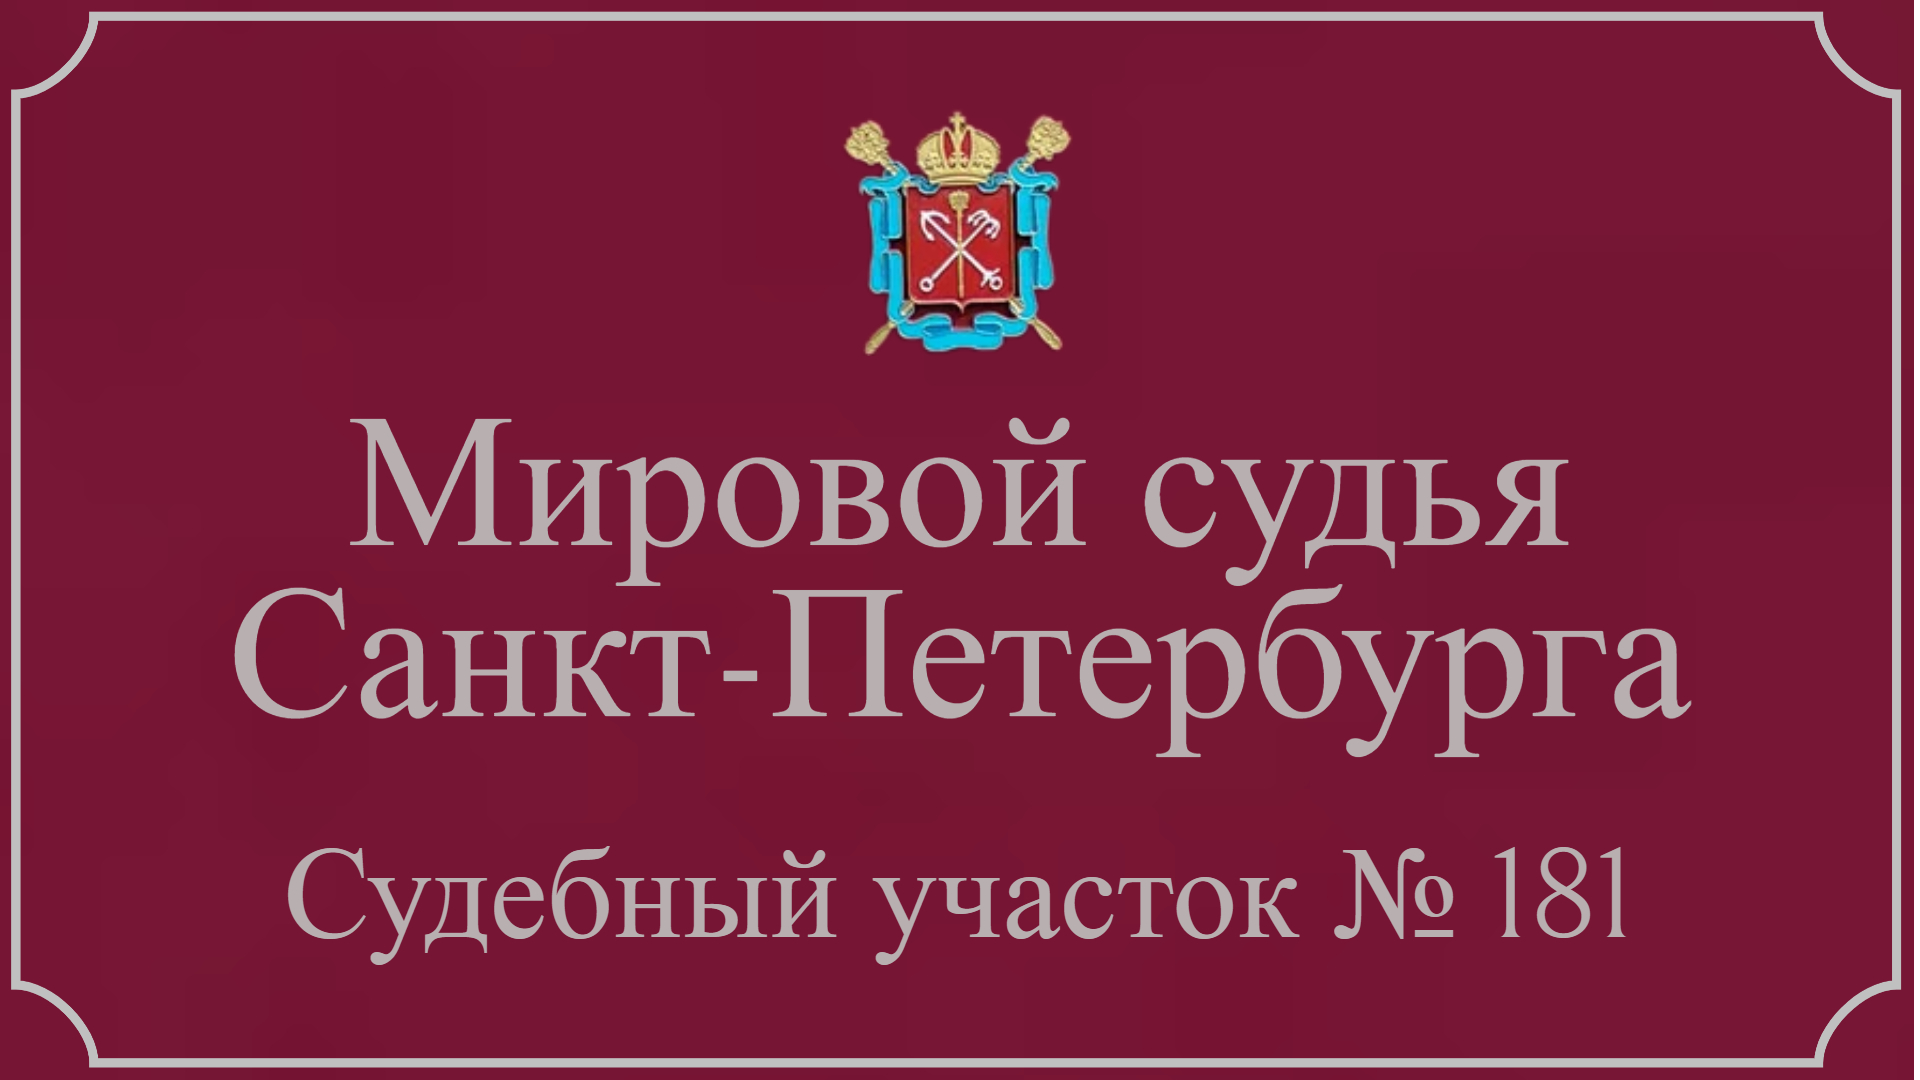 Информация по 181 судебному участку в Санкт-Петербурге.